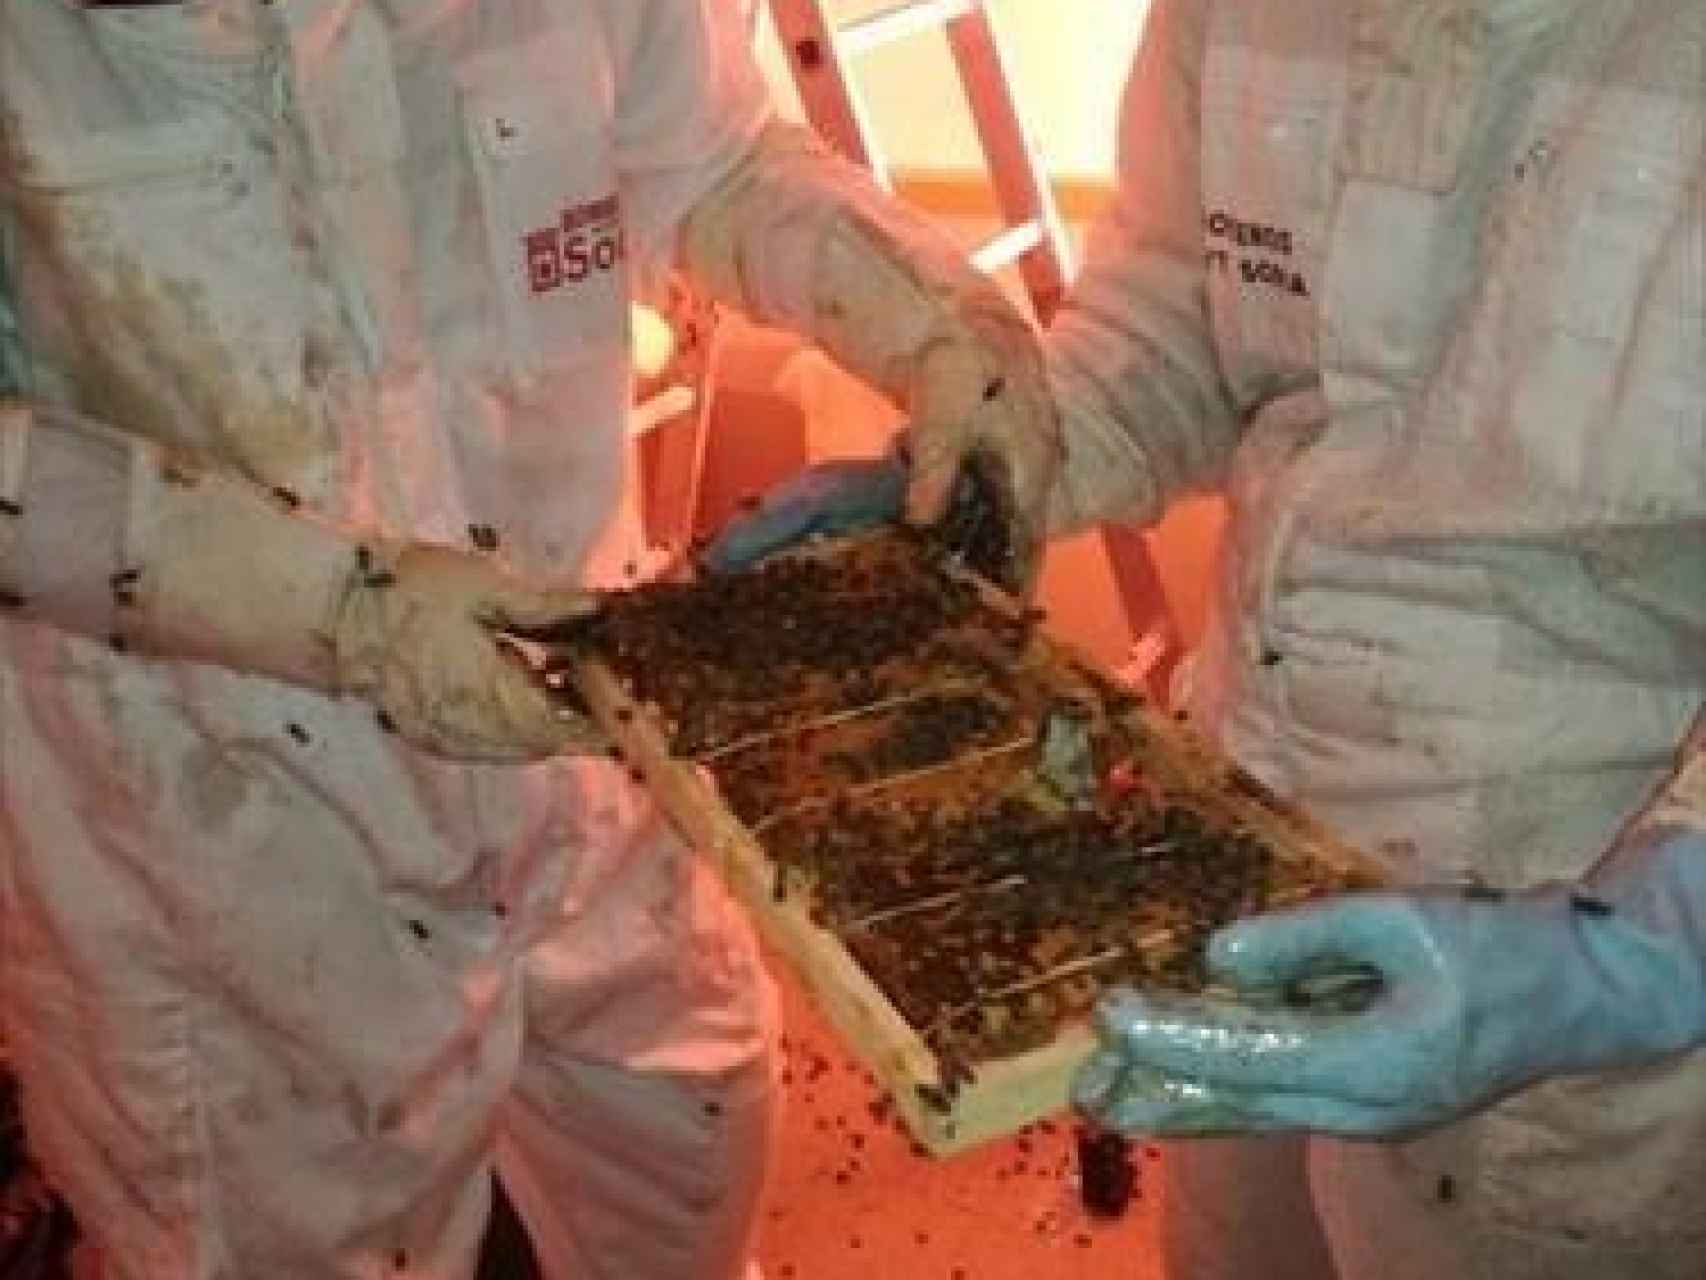 Enjambre de abejas